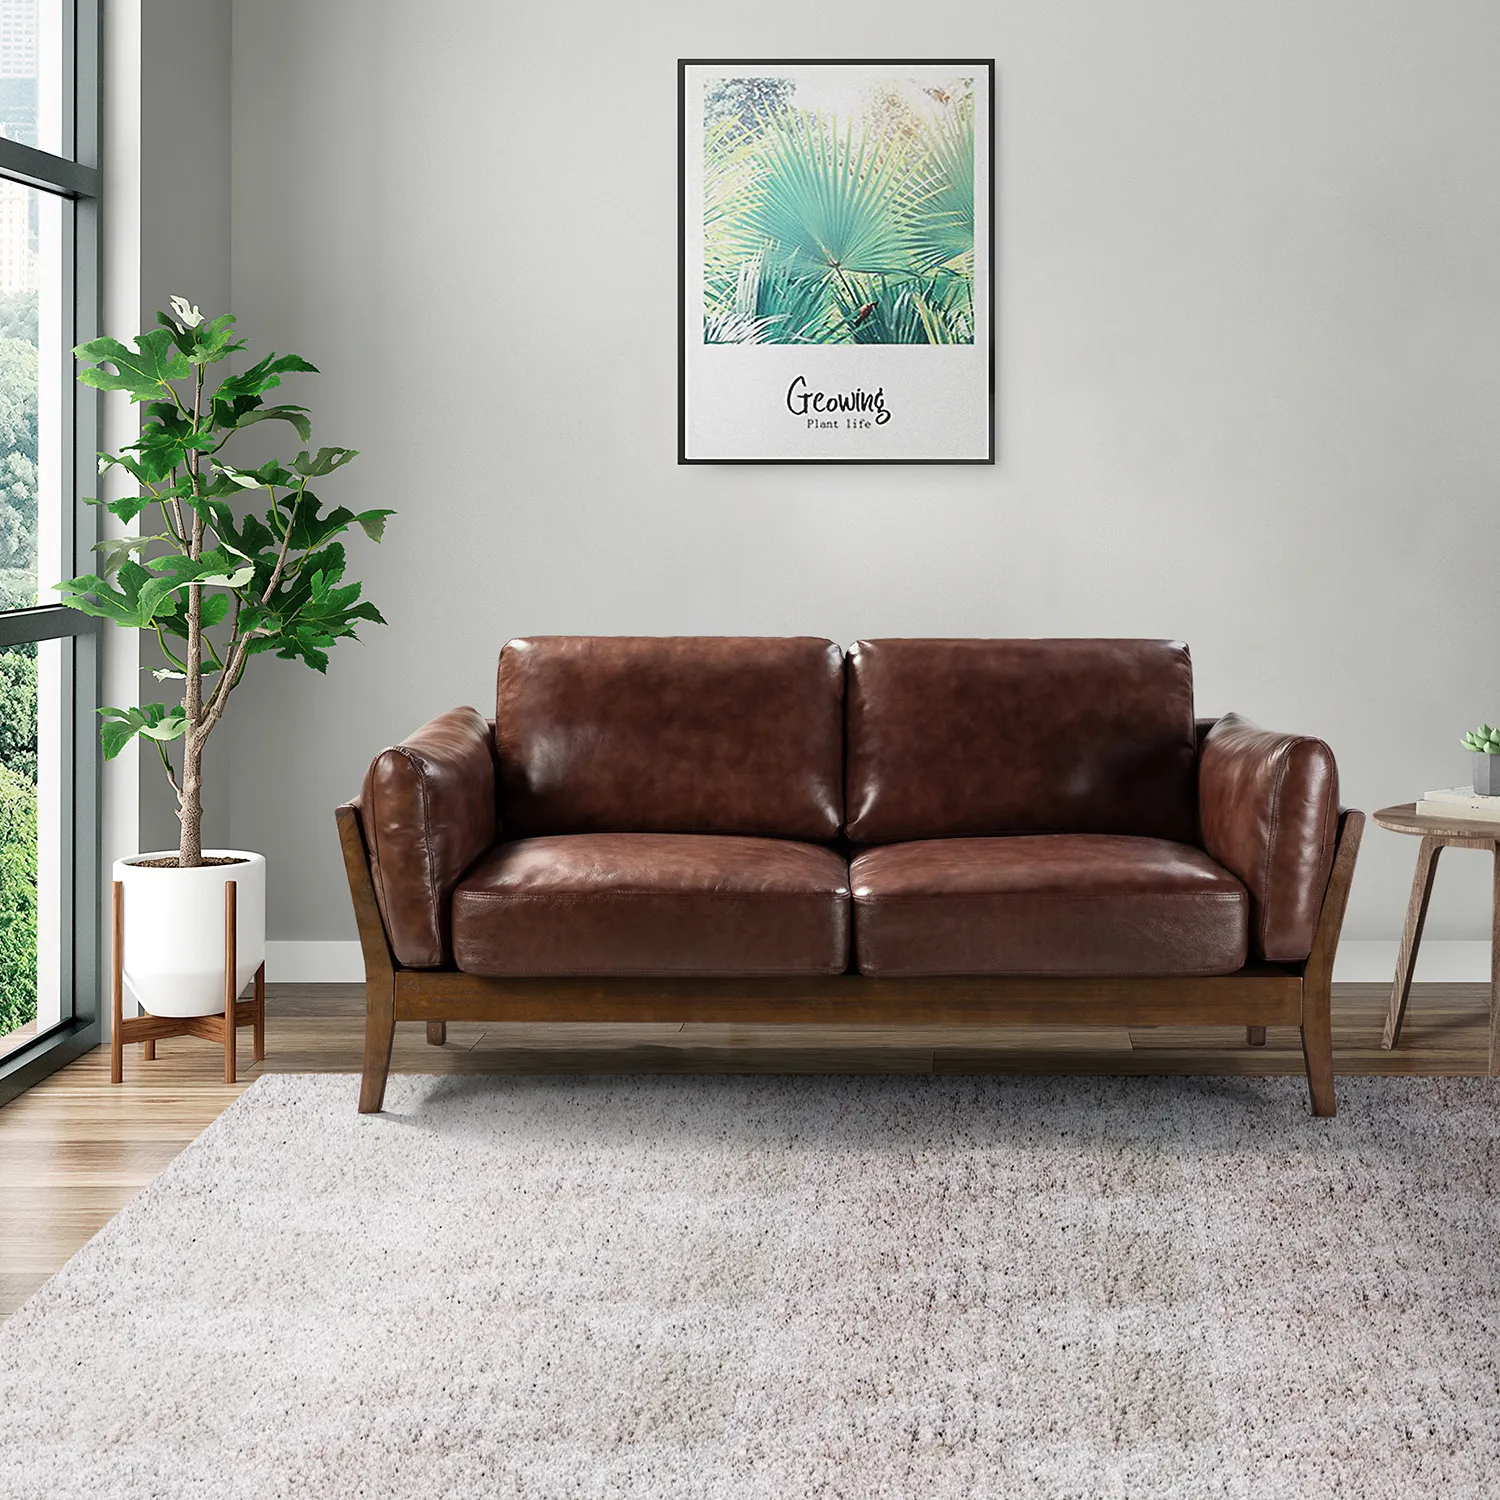 Drop Ship Warehouse venta directa al por mayor diseño moderno sala de estar sofás de cuero conjunto de muebles